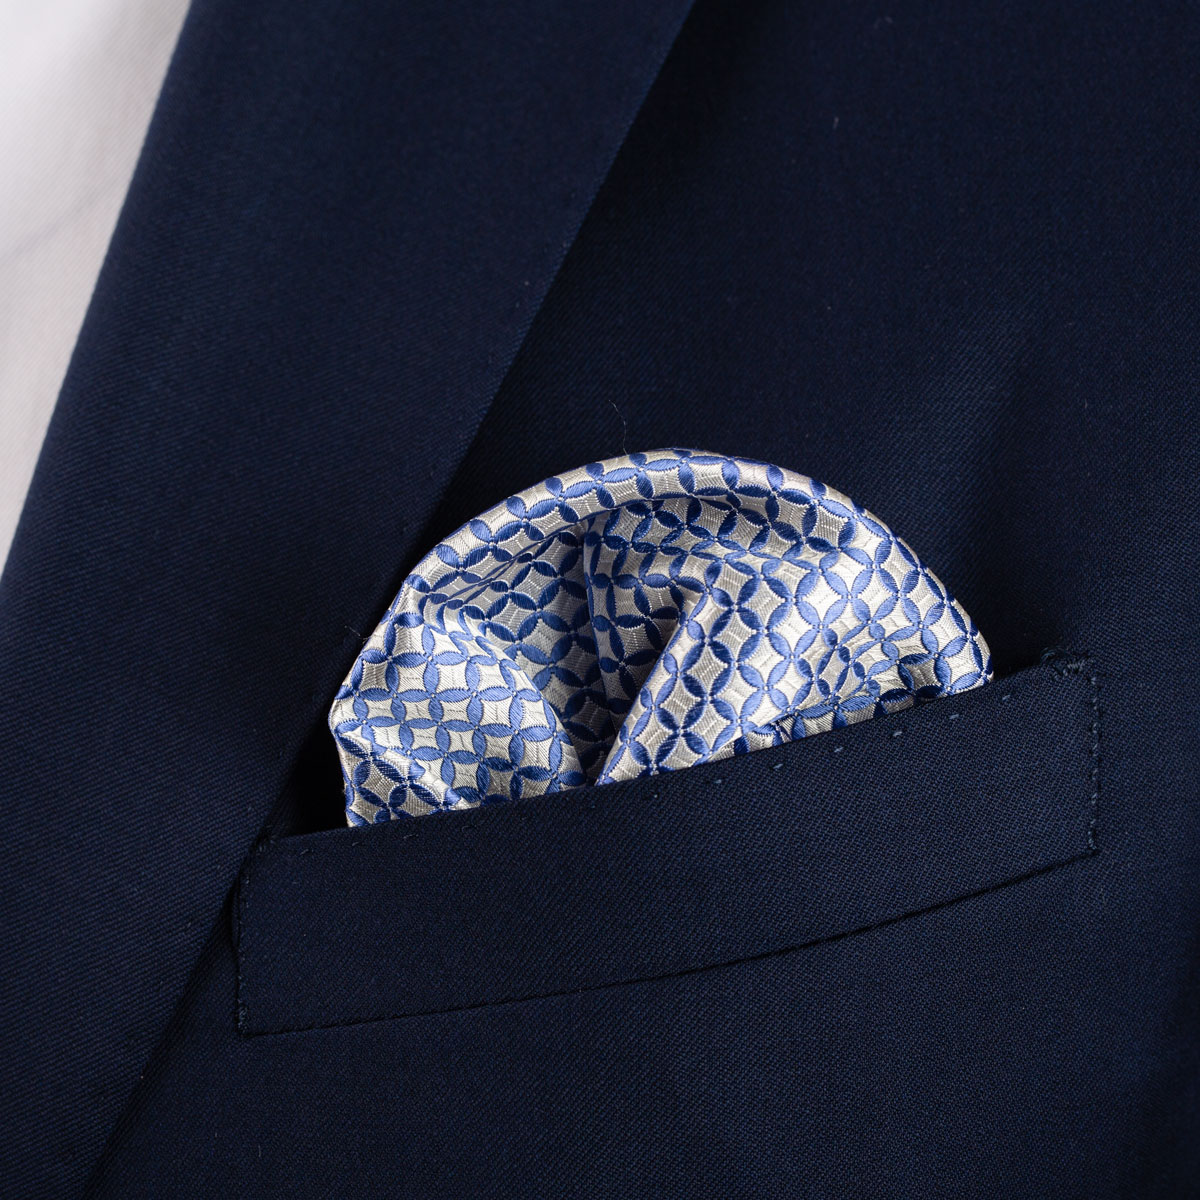 Einstecktuch mit geometrischem Muster in hellblau grau in Brusttasche